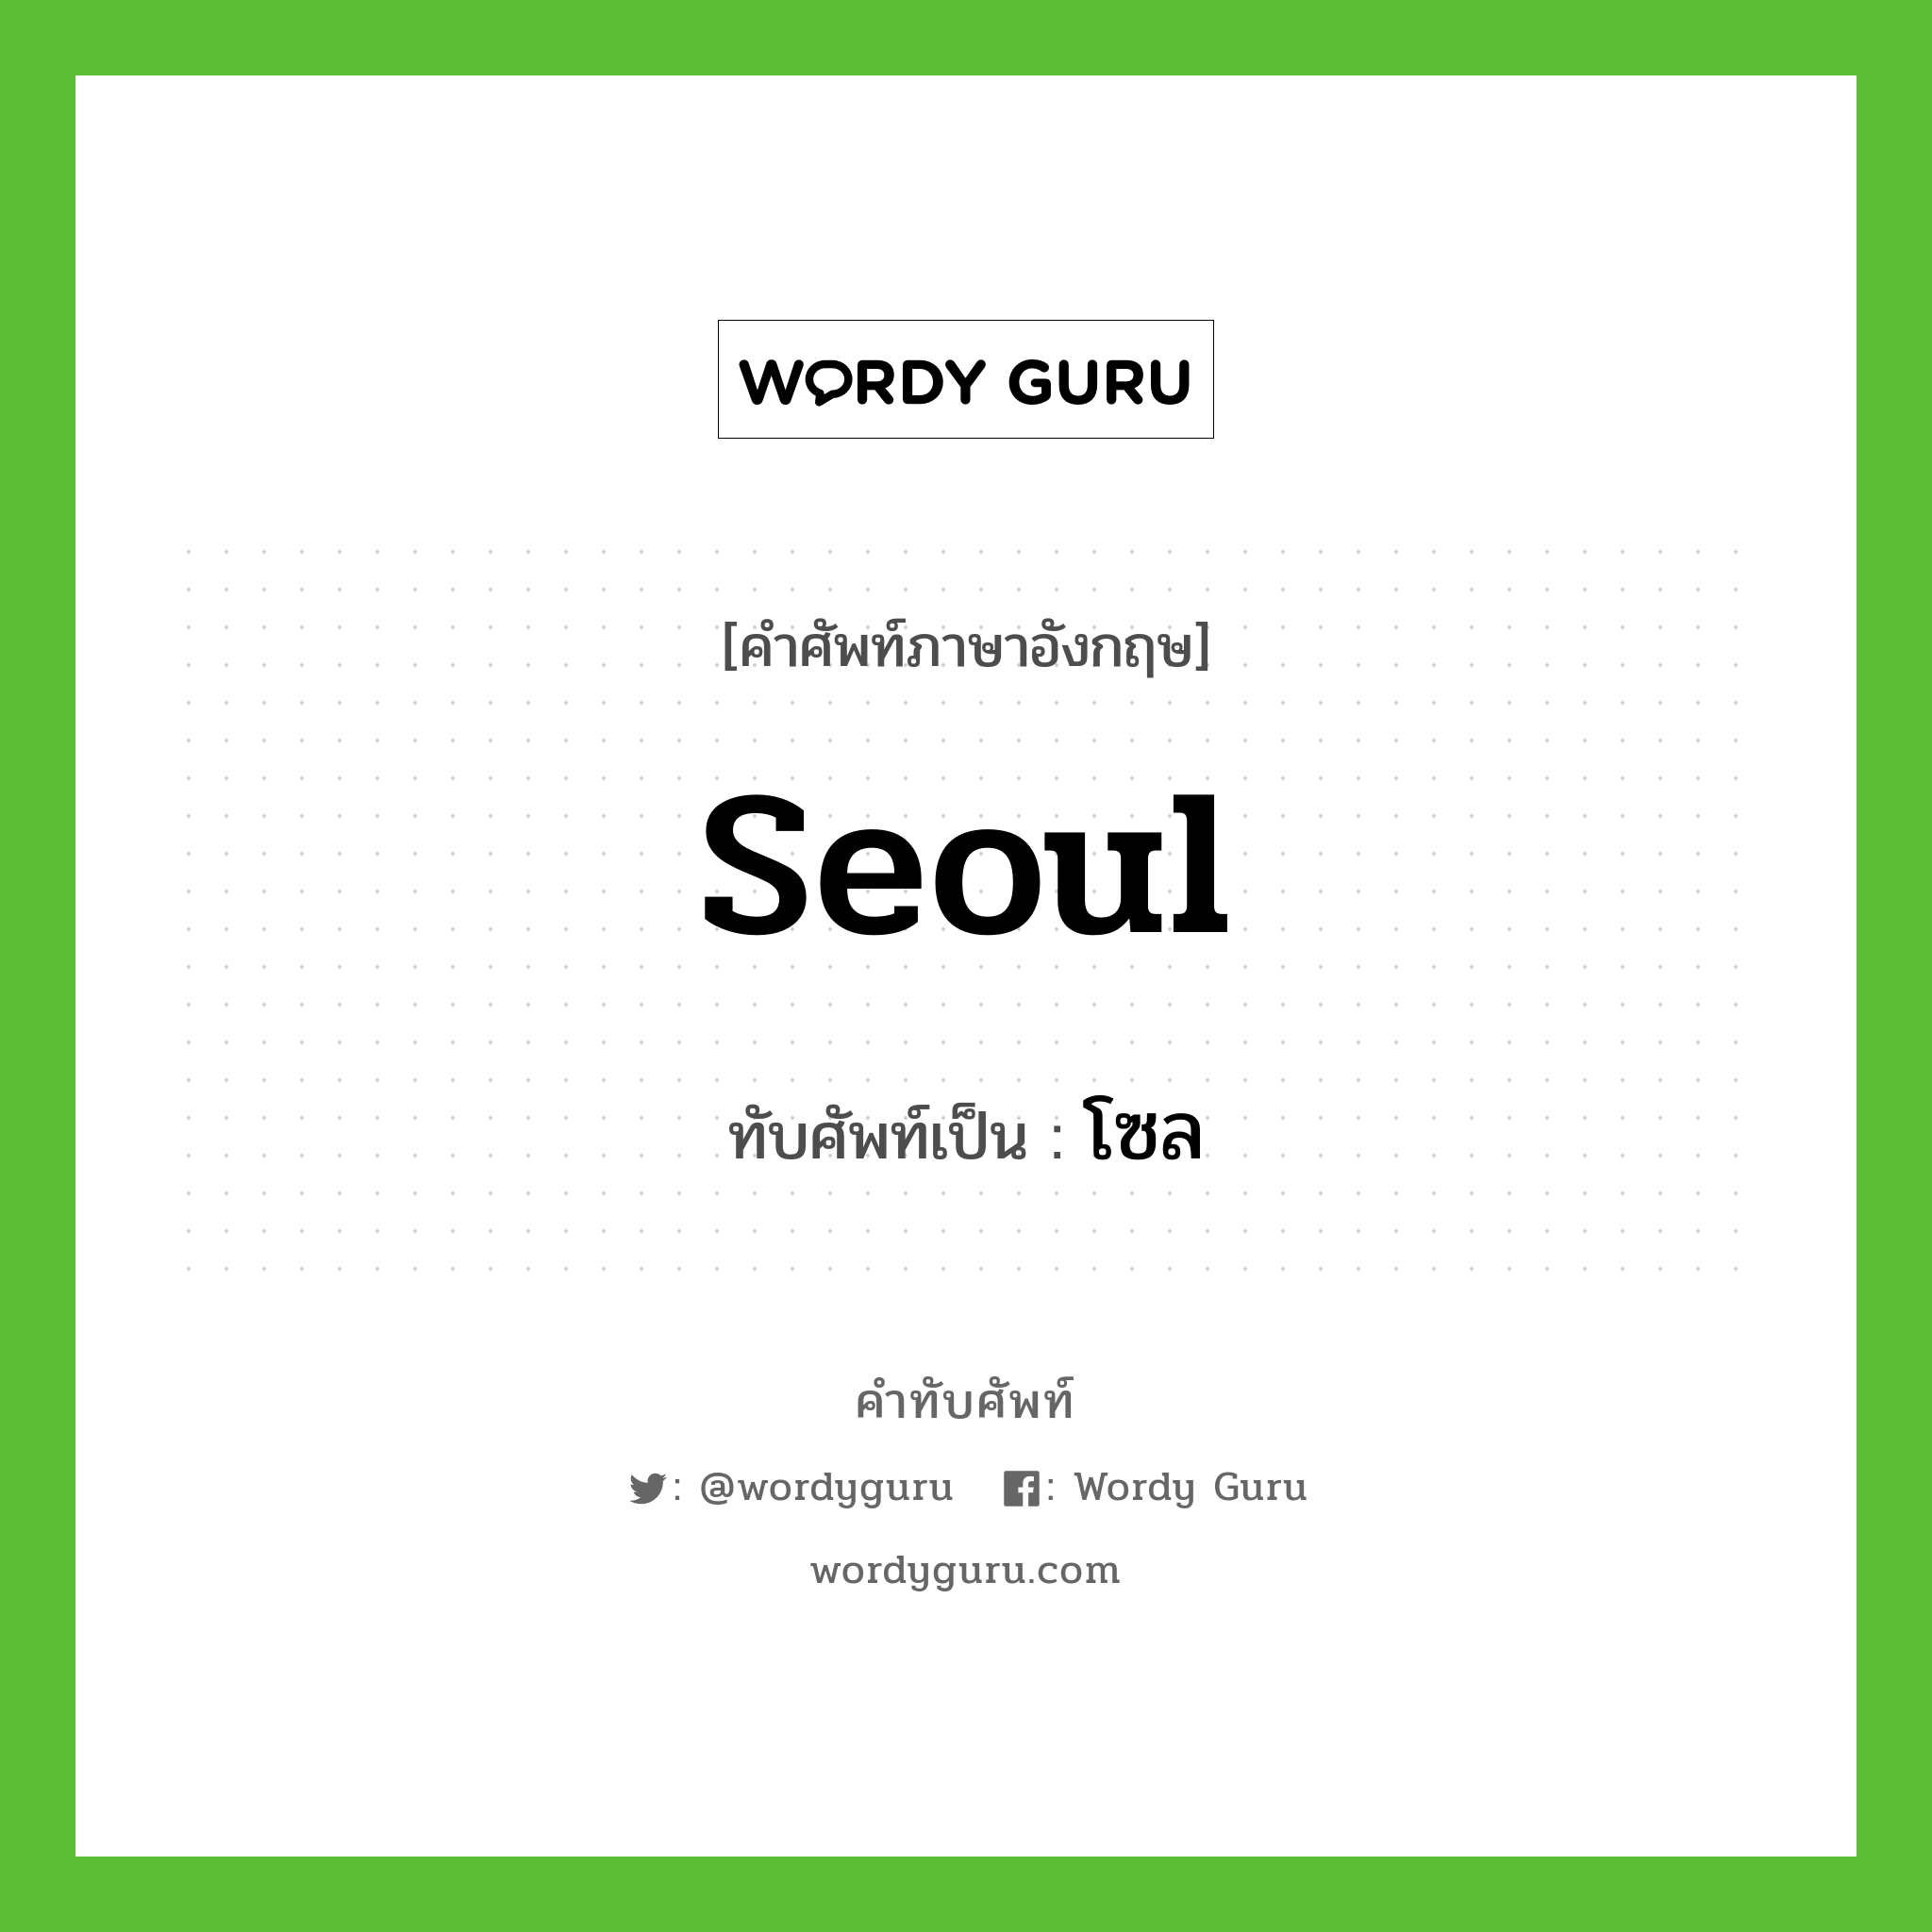 Seoul เขียนเป็นคำไทยว่าอะไร?, คำศัพท์ภาษาอังกฤษ Seoul ทับศัพท์เป็น โซล